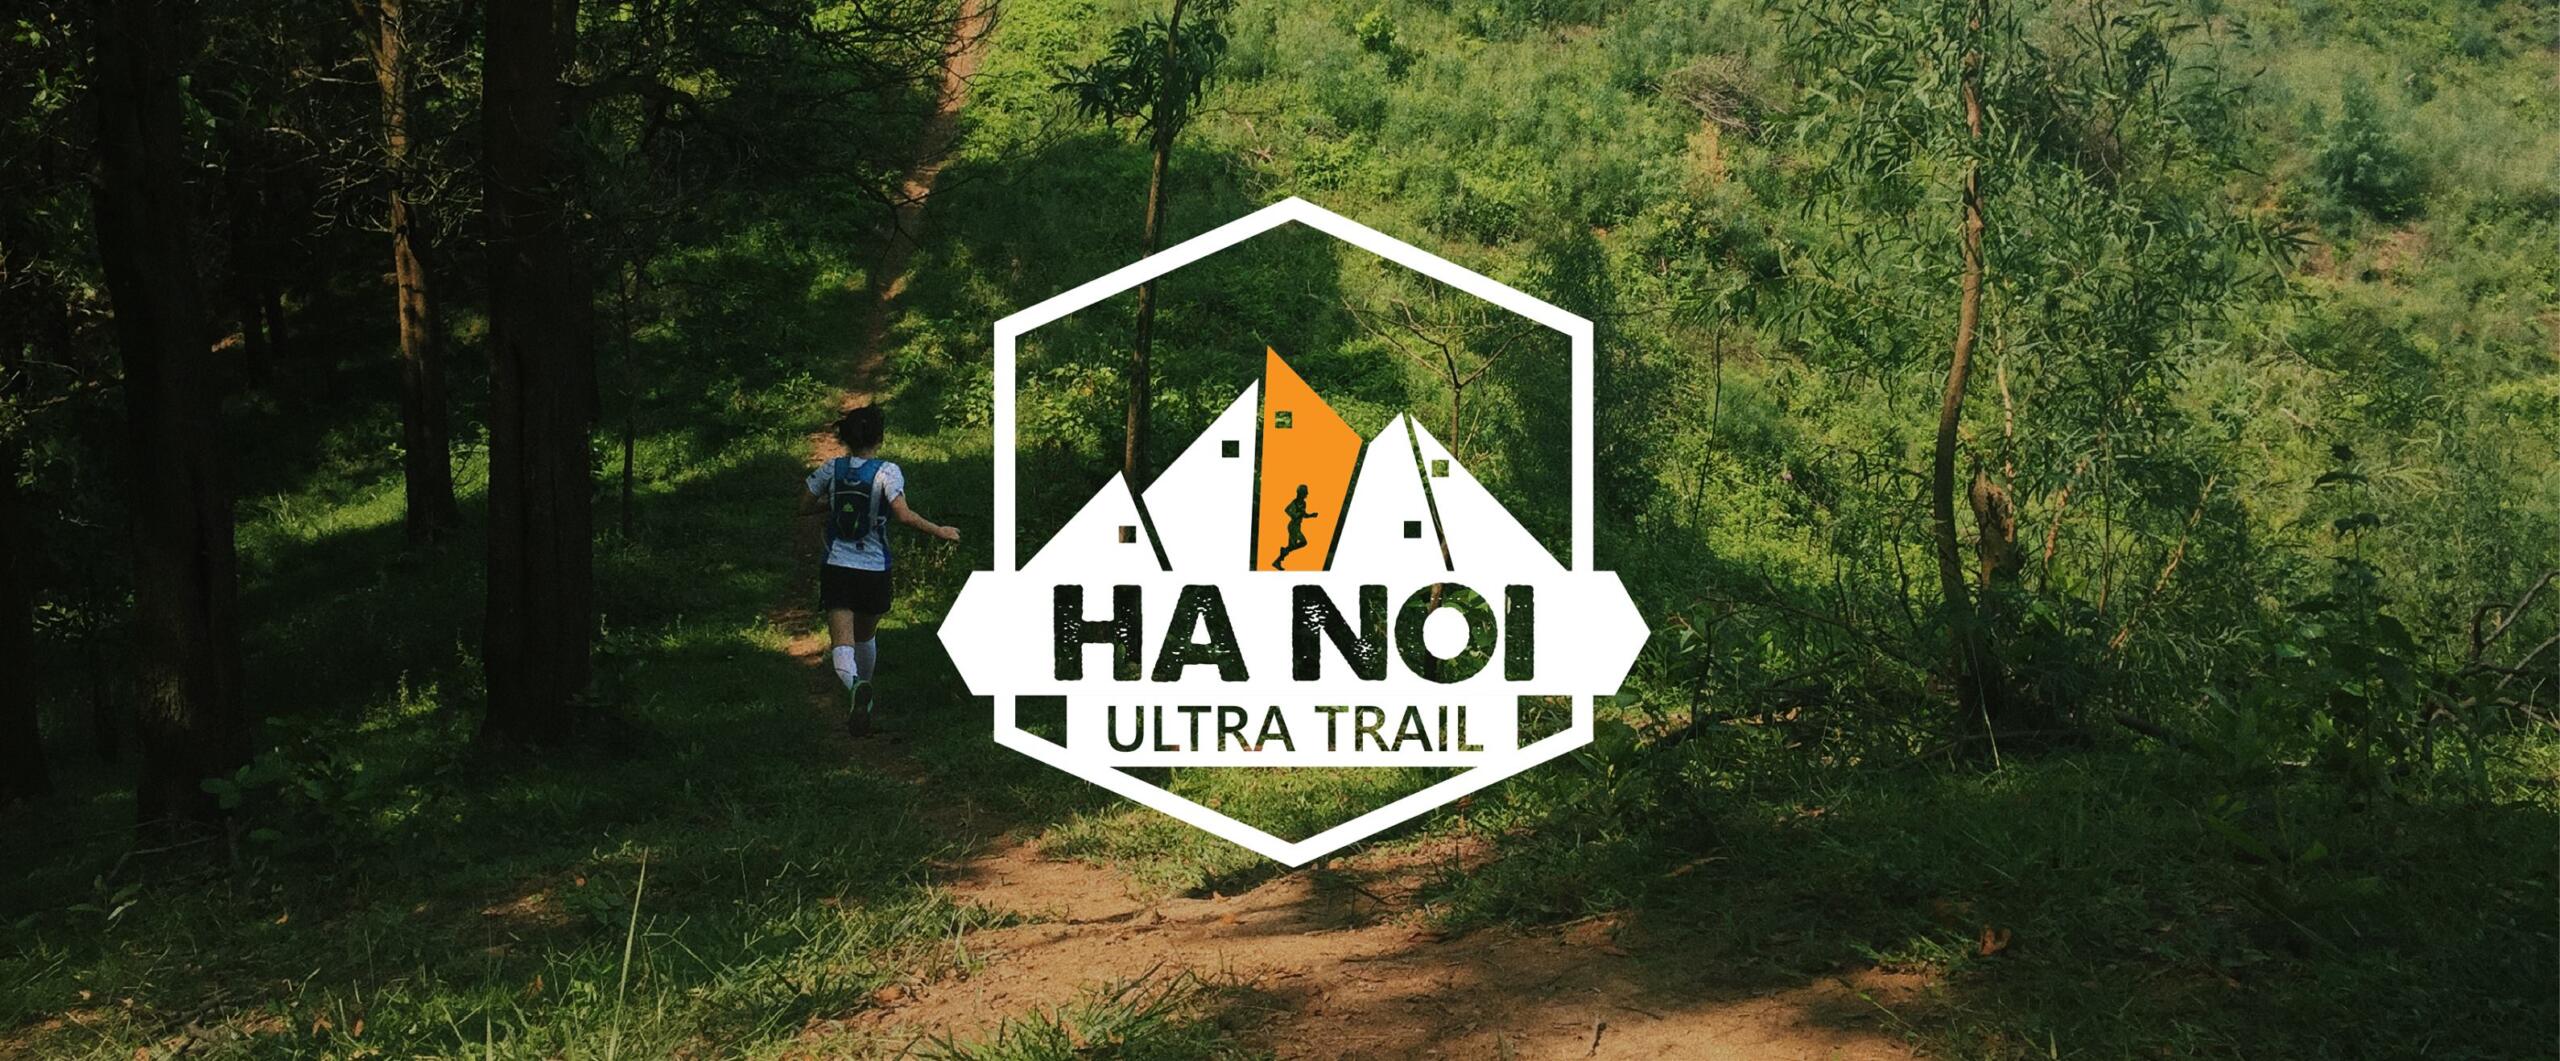 Ha Noi Ultra Trail 2020 - ha noi ultra trail 2018 scaled